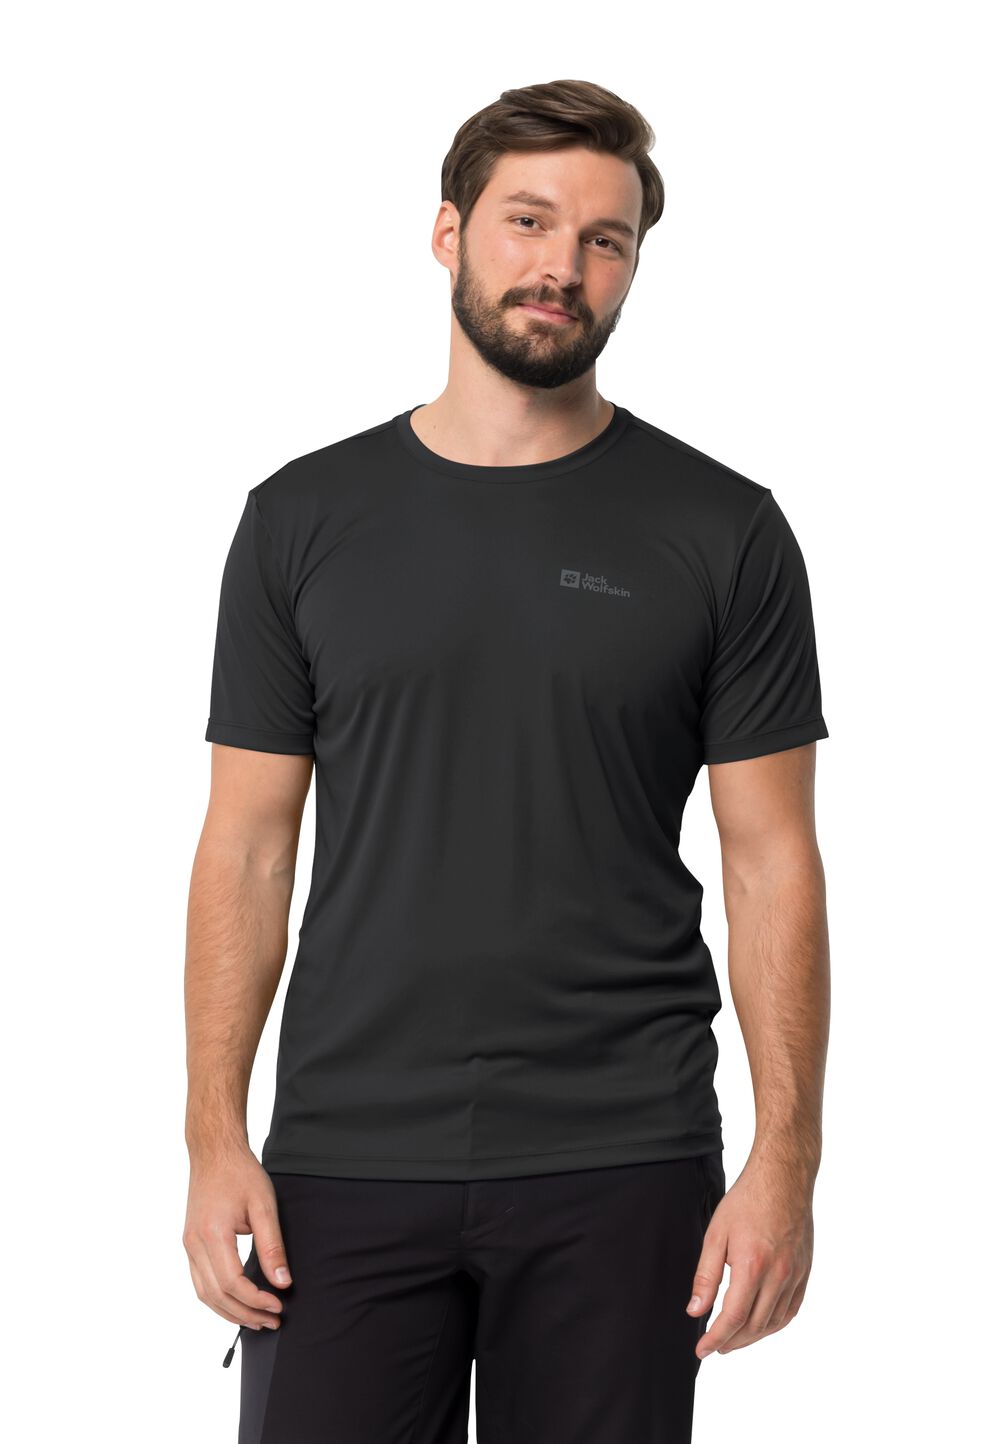 Jack Wolfskin Funktionsshirt Herren Tech T-Shirt Men XL schwarz black von Jack Wolfskin